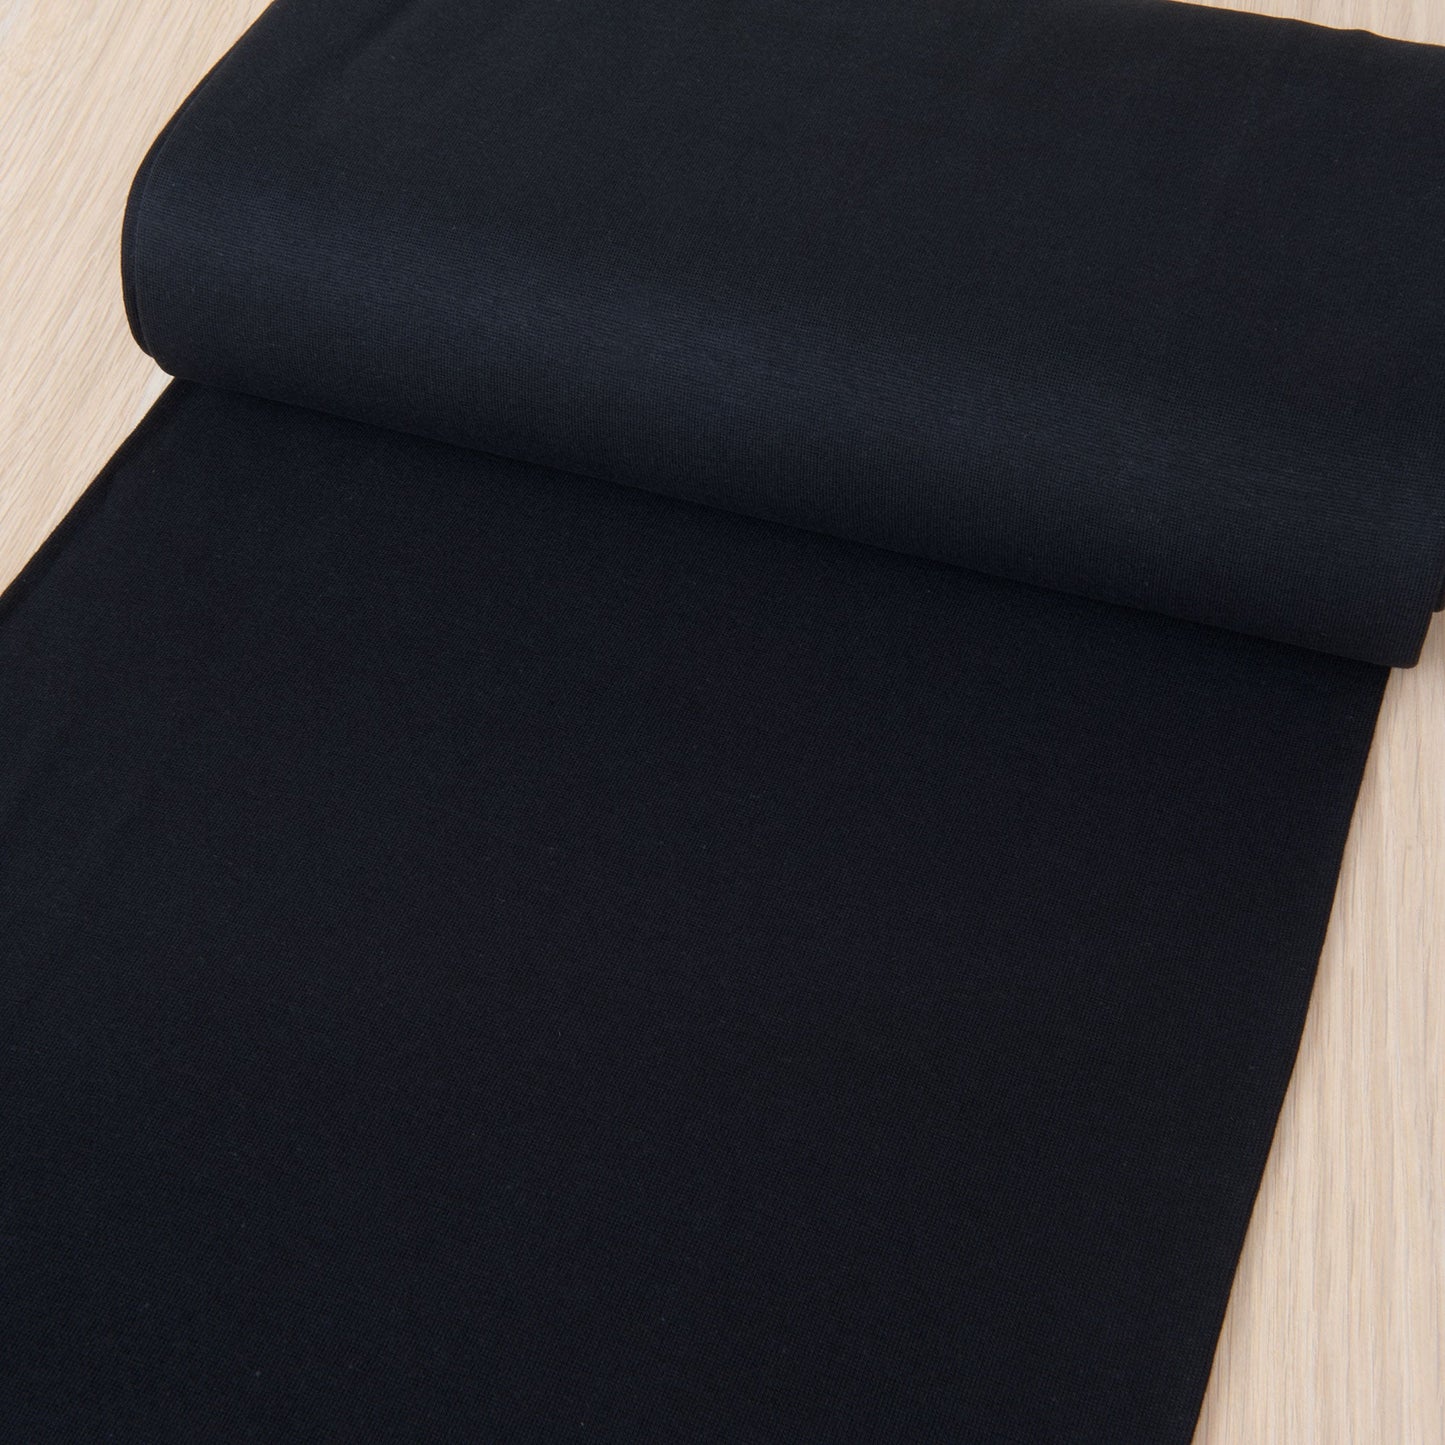 Tubular Ribbing Fabric in Black